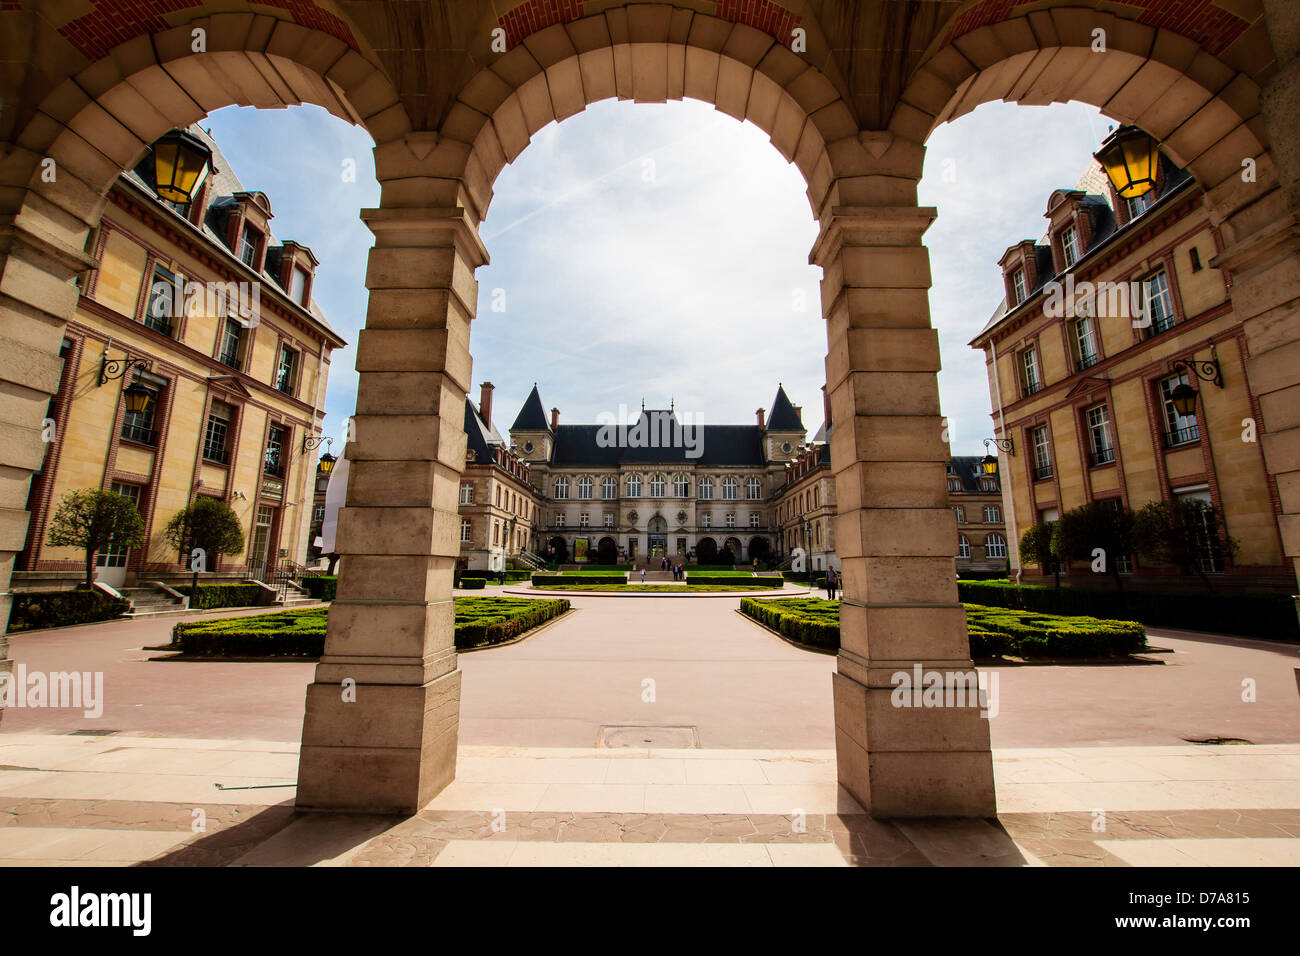 Arcade entrance of the University campus in Paris, France / The Cité Internationale Universitaire de Paris - Cité U Stock Photo